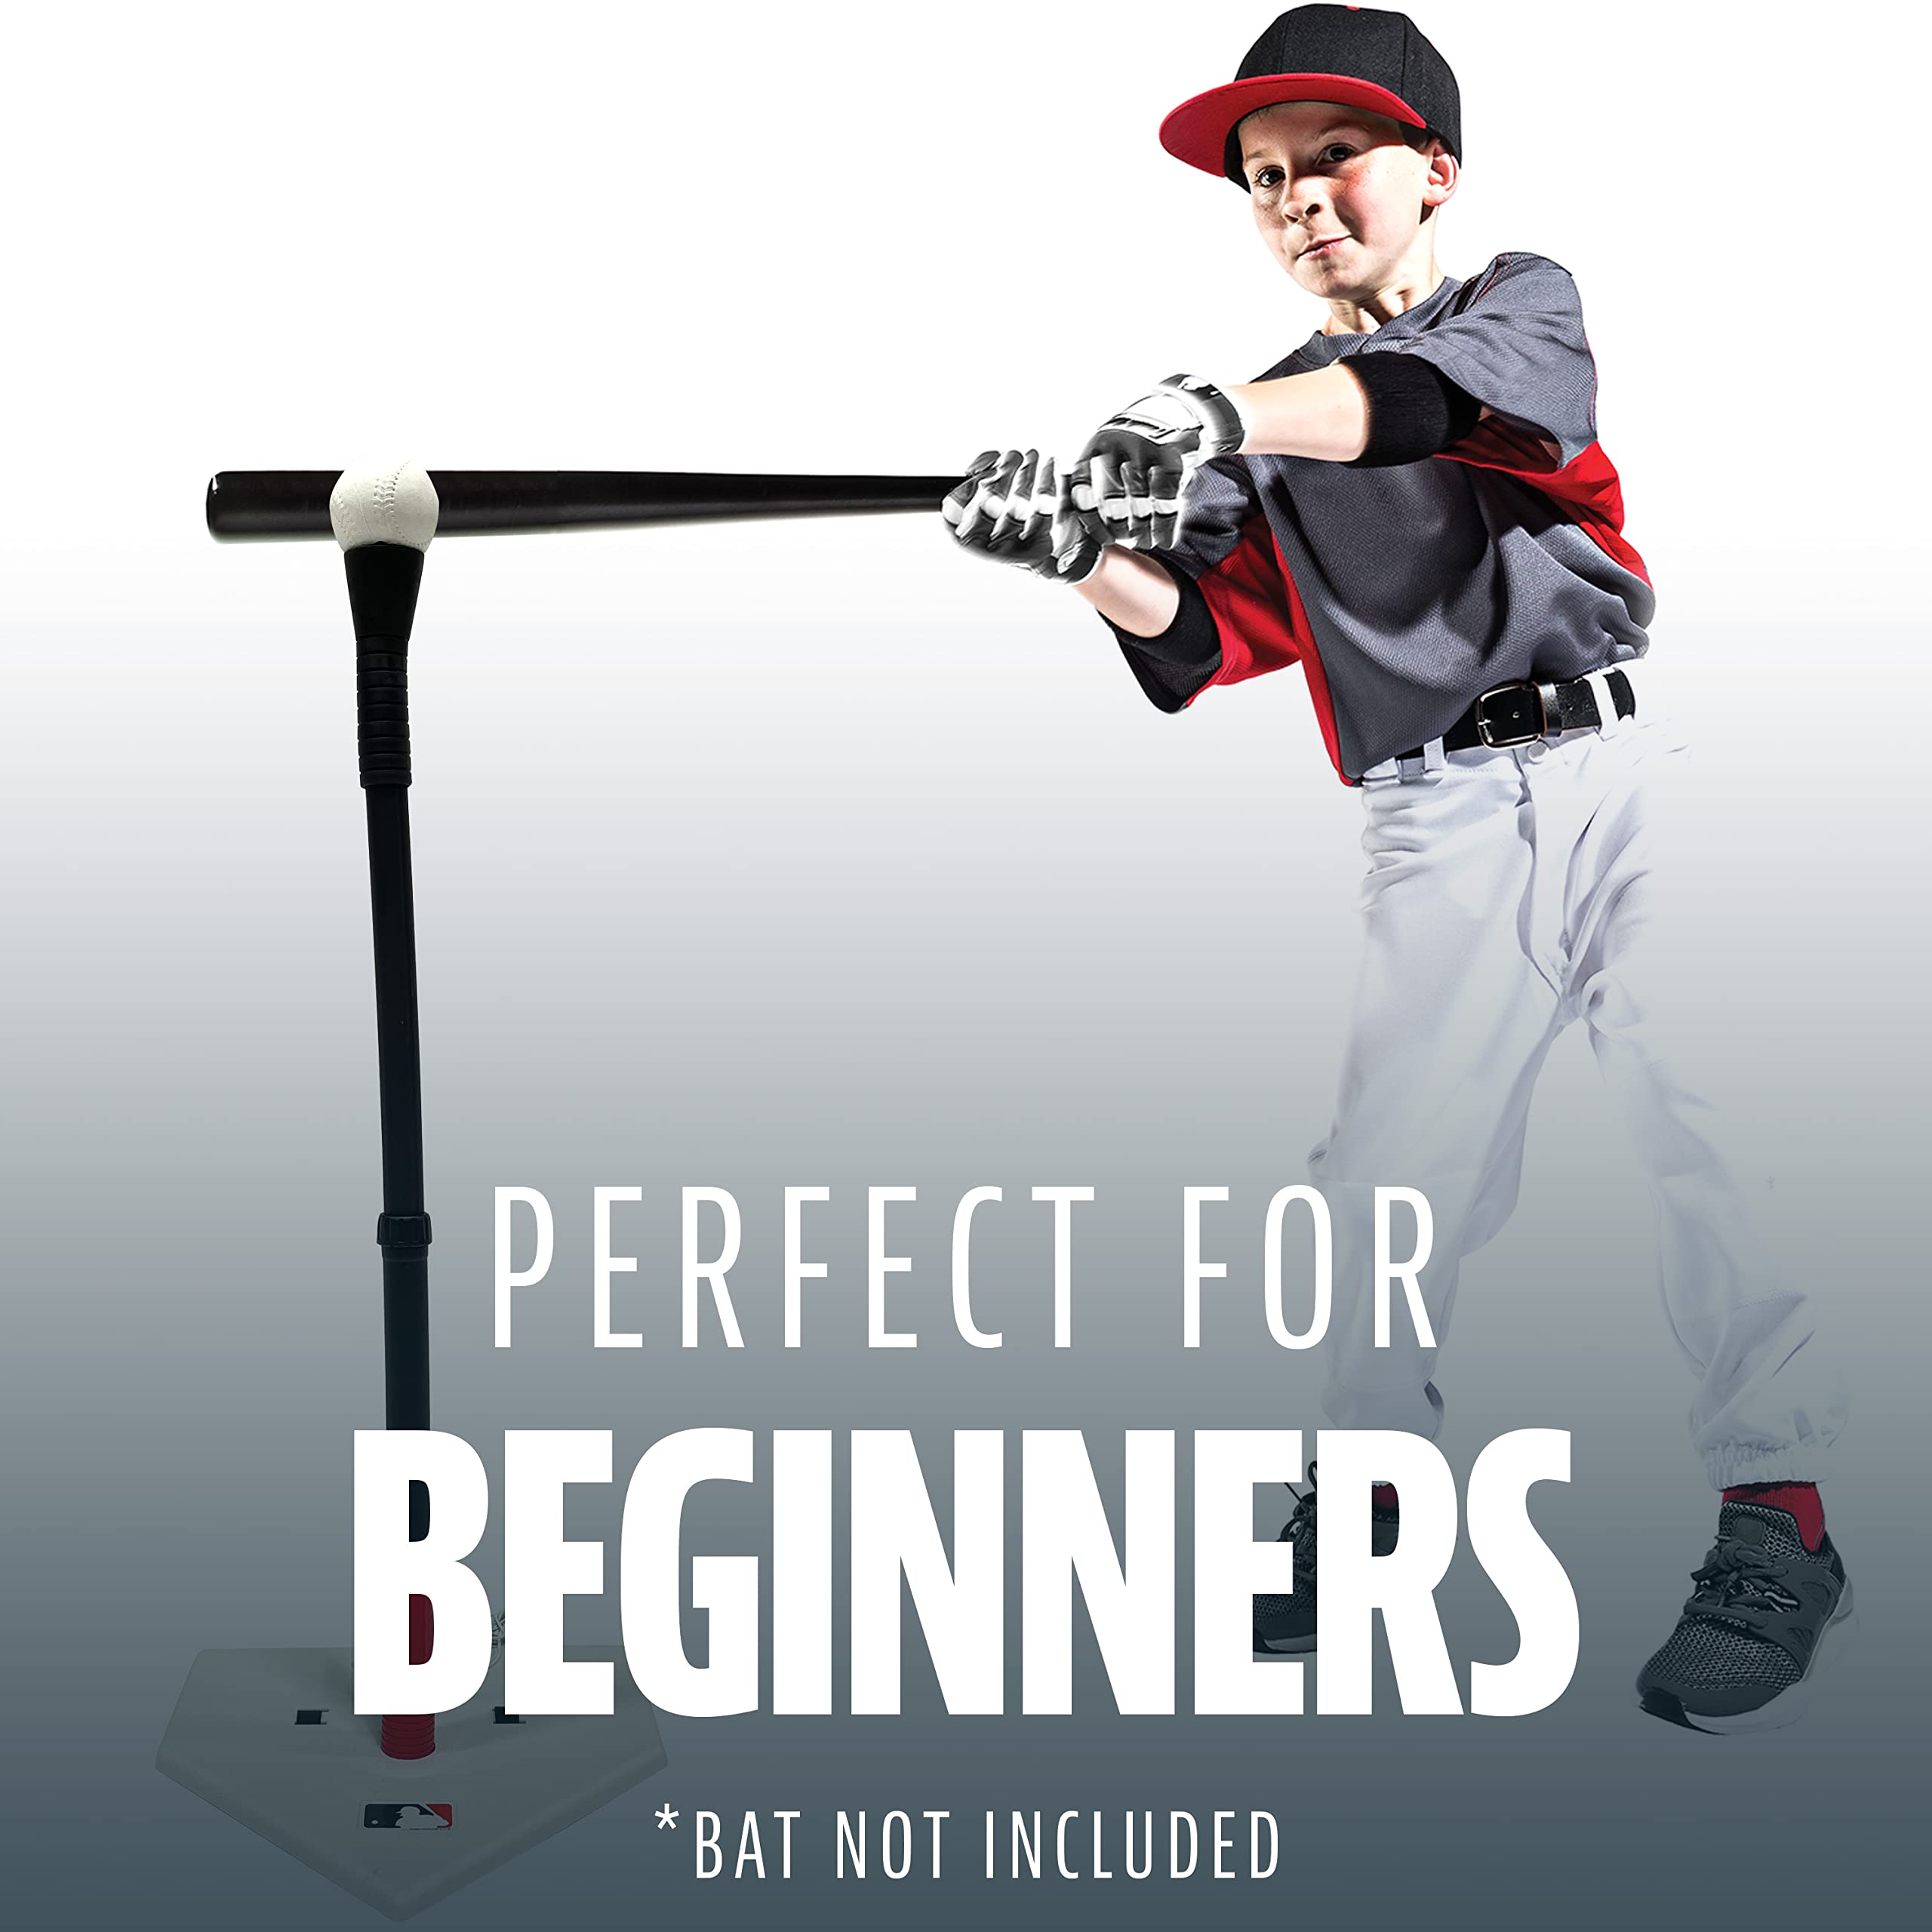 Franklin Sports MLB Teeball Starter Set - Youth Baseball and Tball Tee, Baseball and Bases with Rebounder Net - Full Beginner